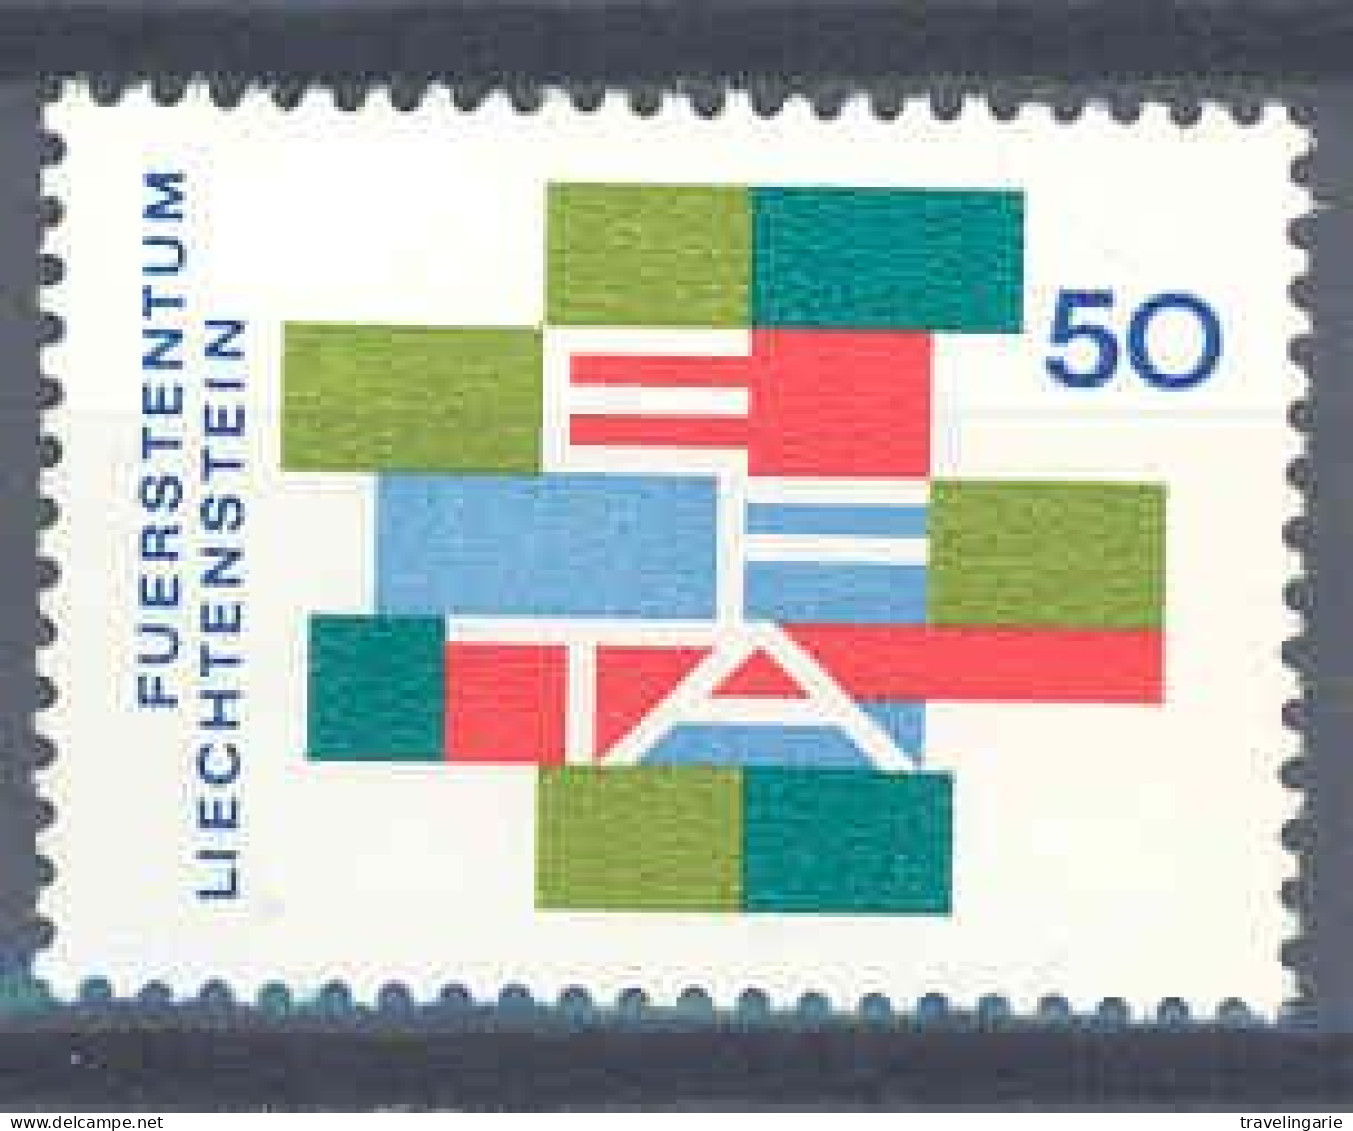 Liechtenstein 1967 EFTA European Free Trade Organisation ** MNH - Europese Gedachte